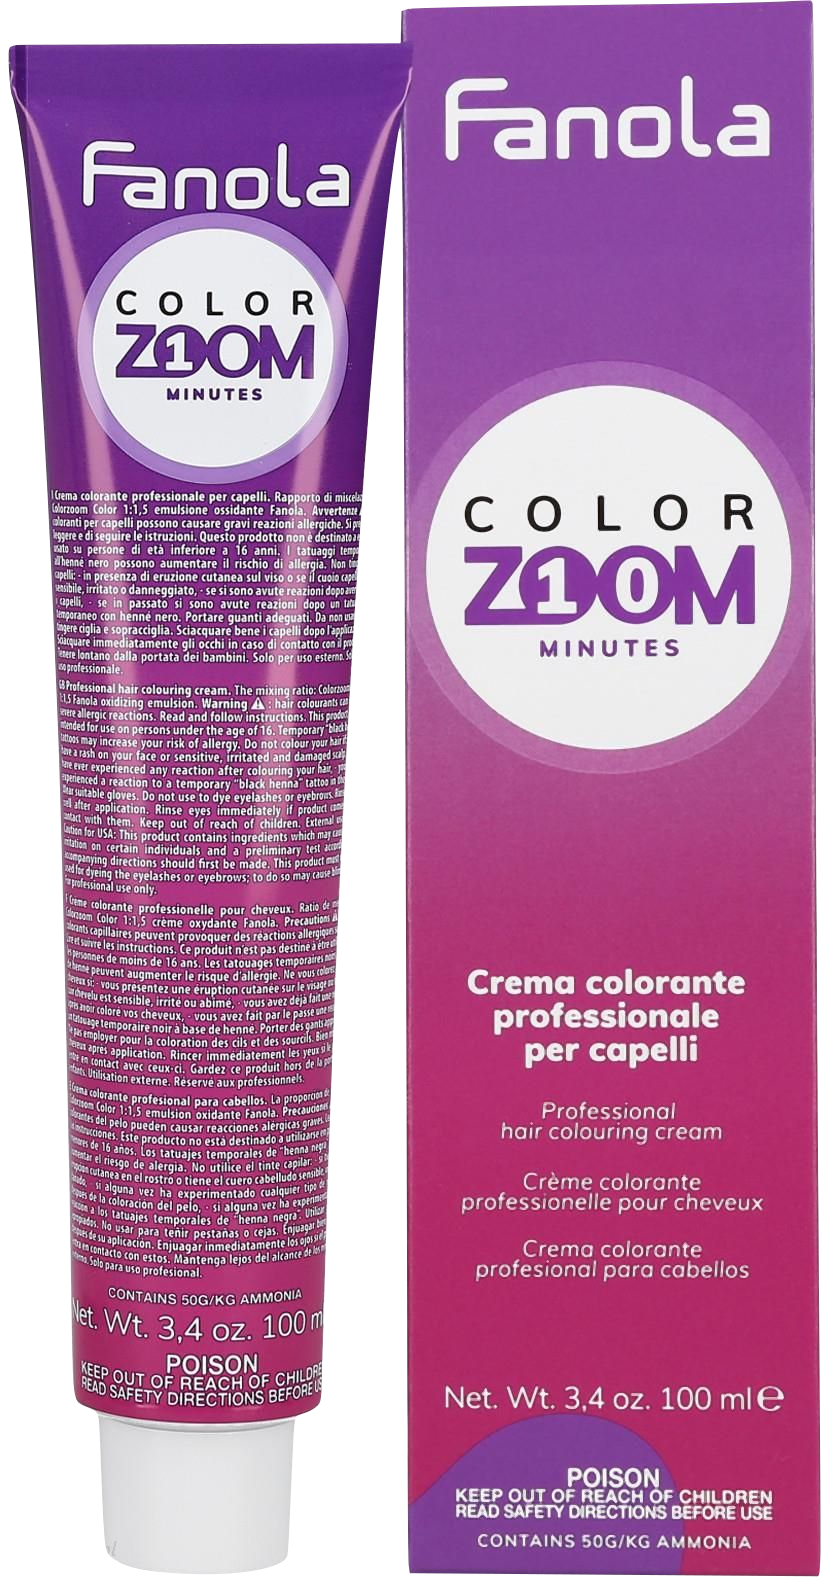 Brązowa farba do włosów  Fanola Color Zoom krem do farbowania włosów cała paleta 100 ml 4.71 Zimny brązowy kasztan